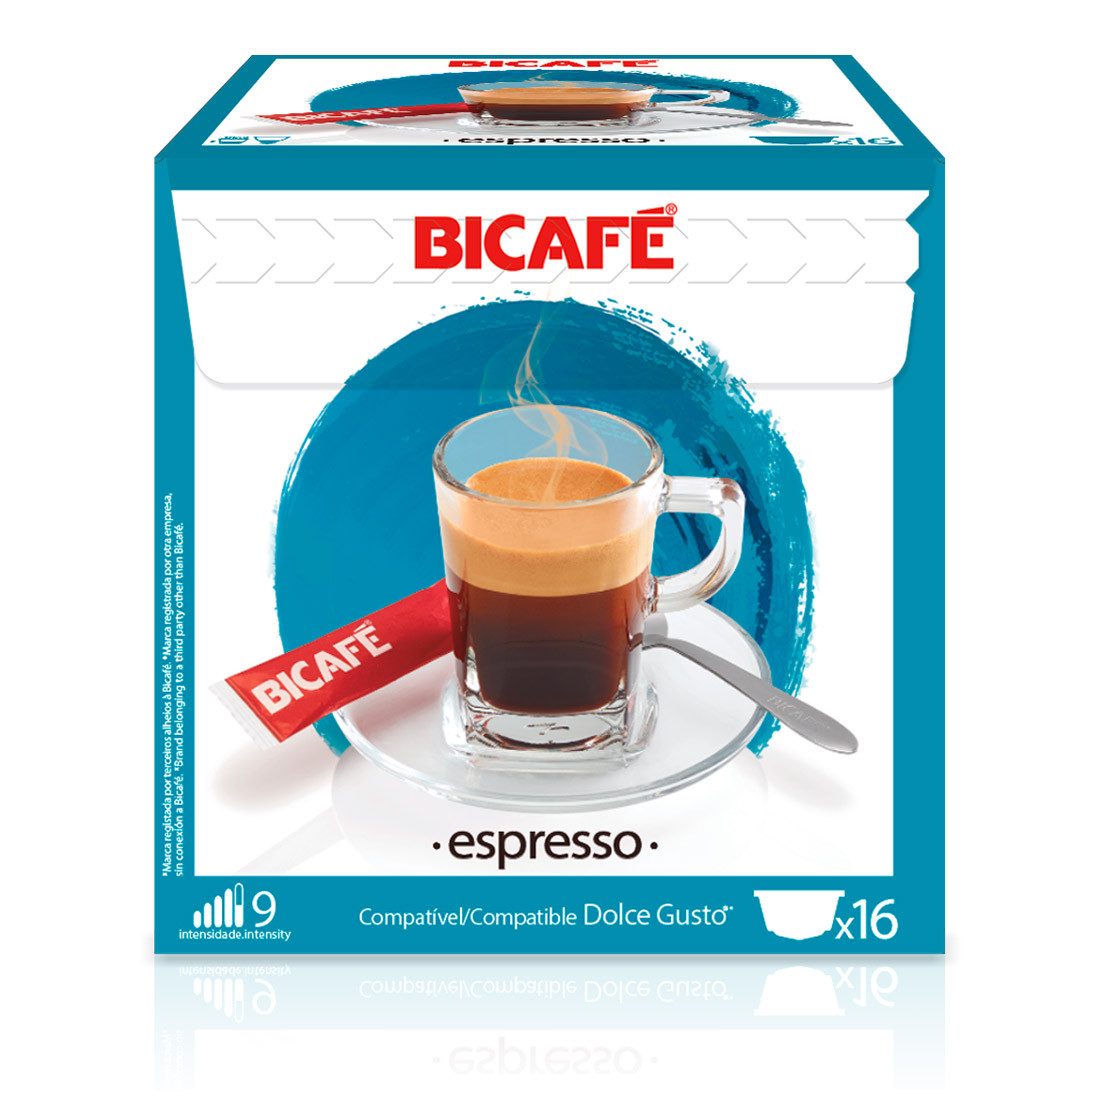 Cápsulas Compatível Dolce Gusto Espresso Bicafé - 16 un